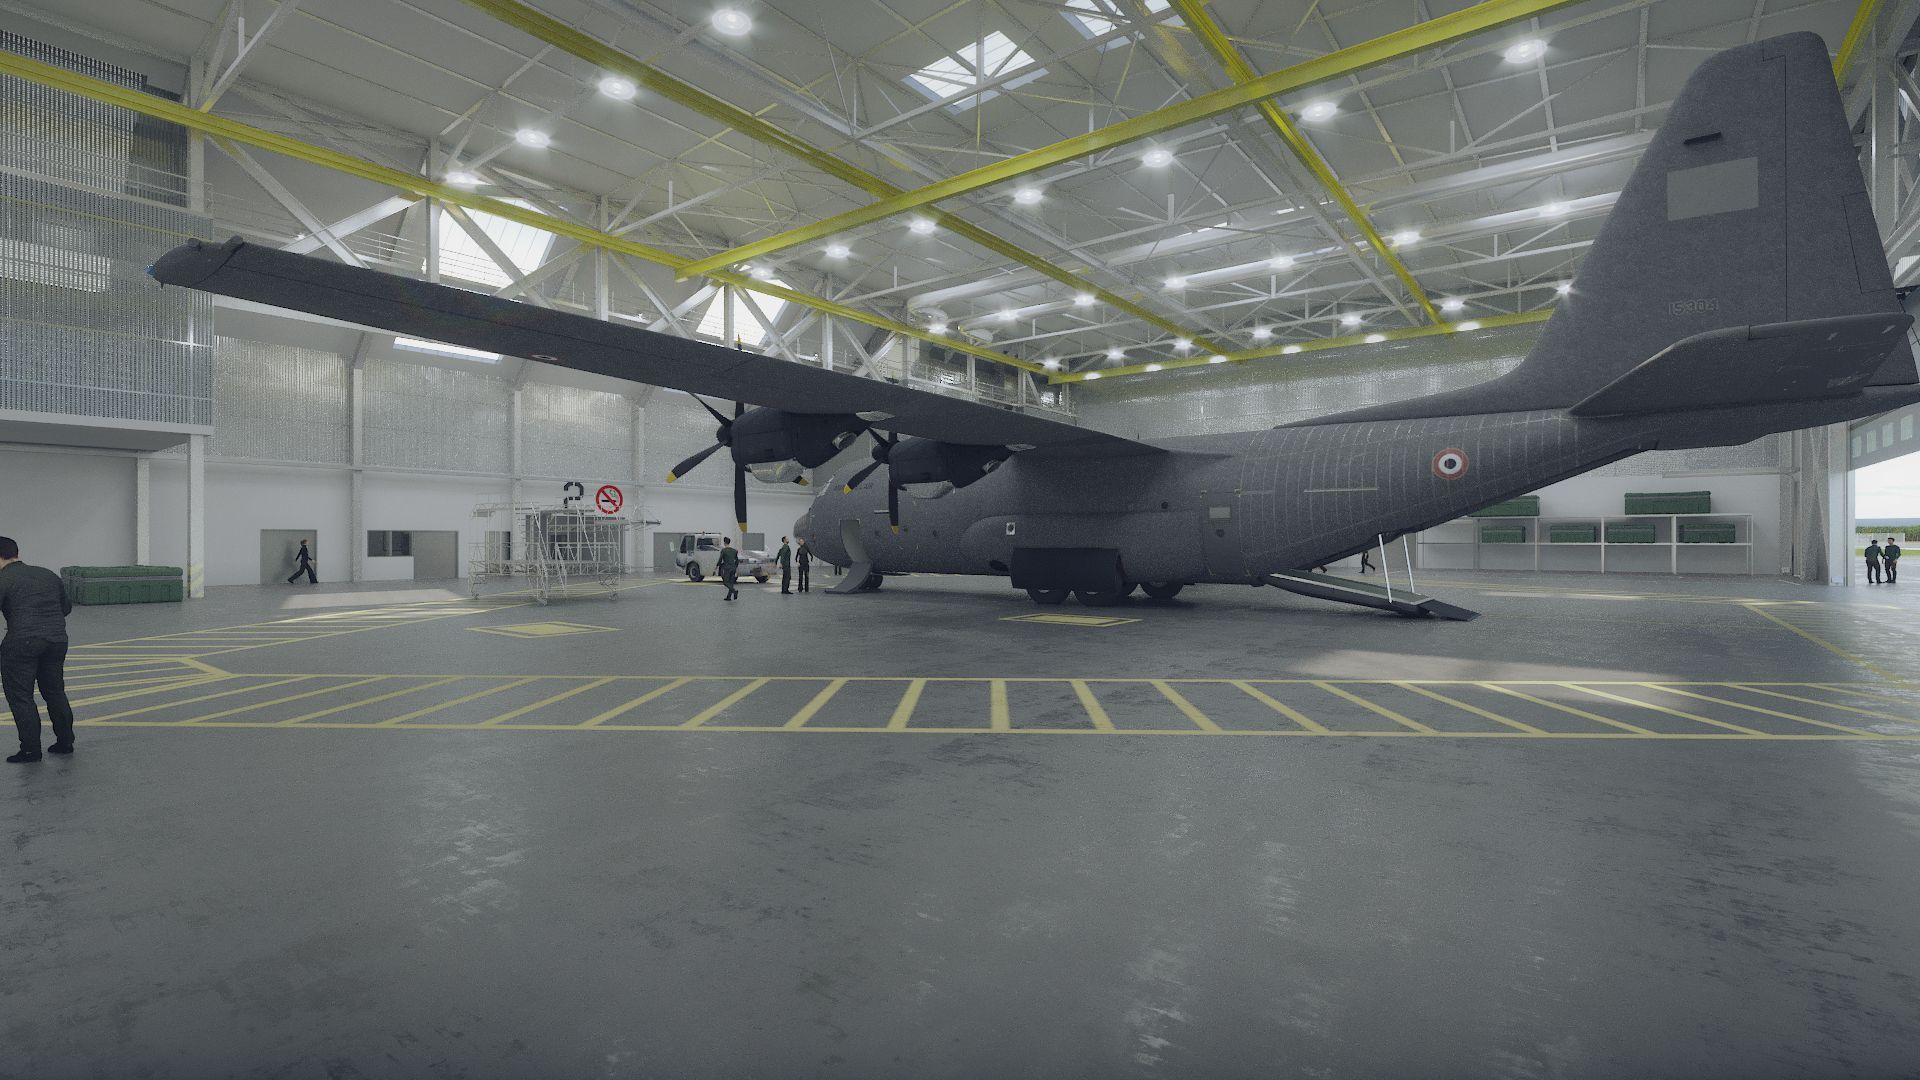 Capture du film vue depuis le hangar à avion pour le projet Base aérienne BA 105